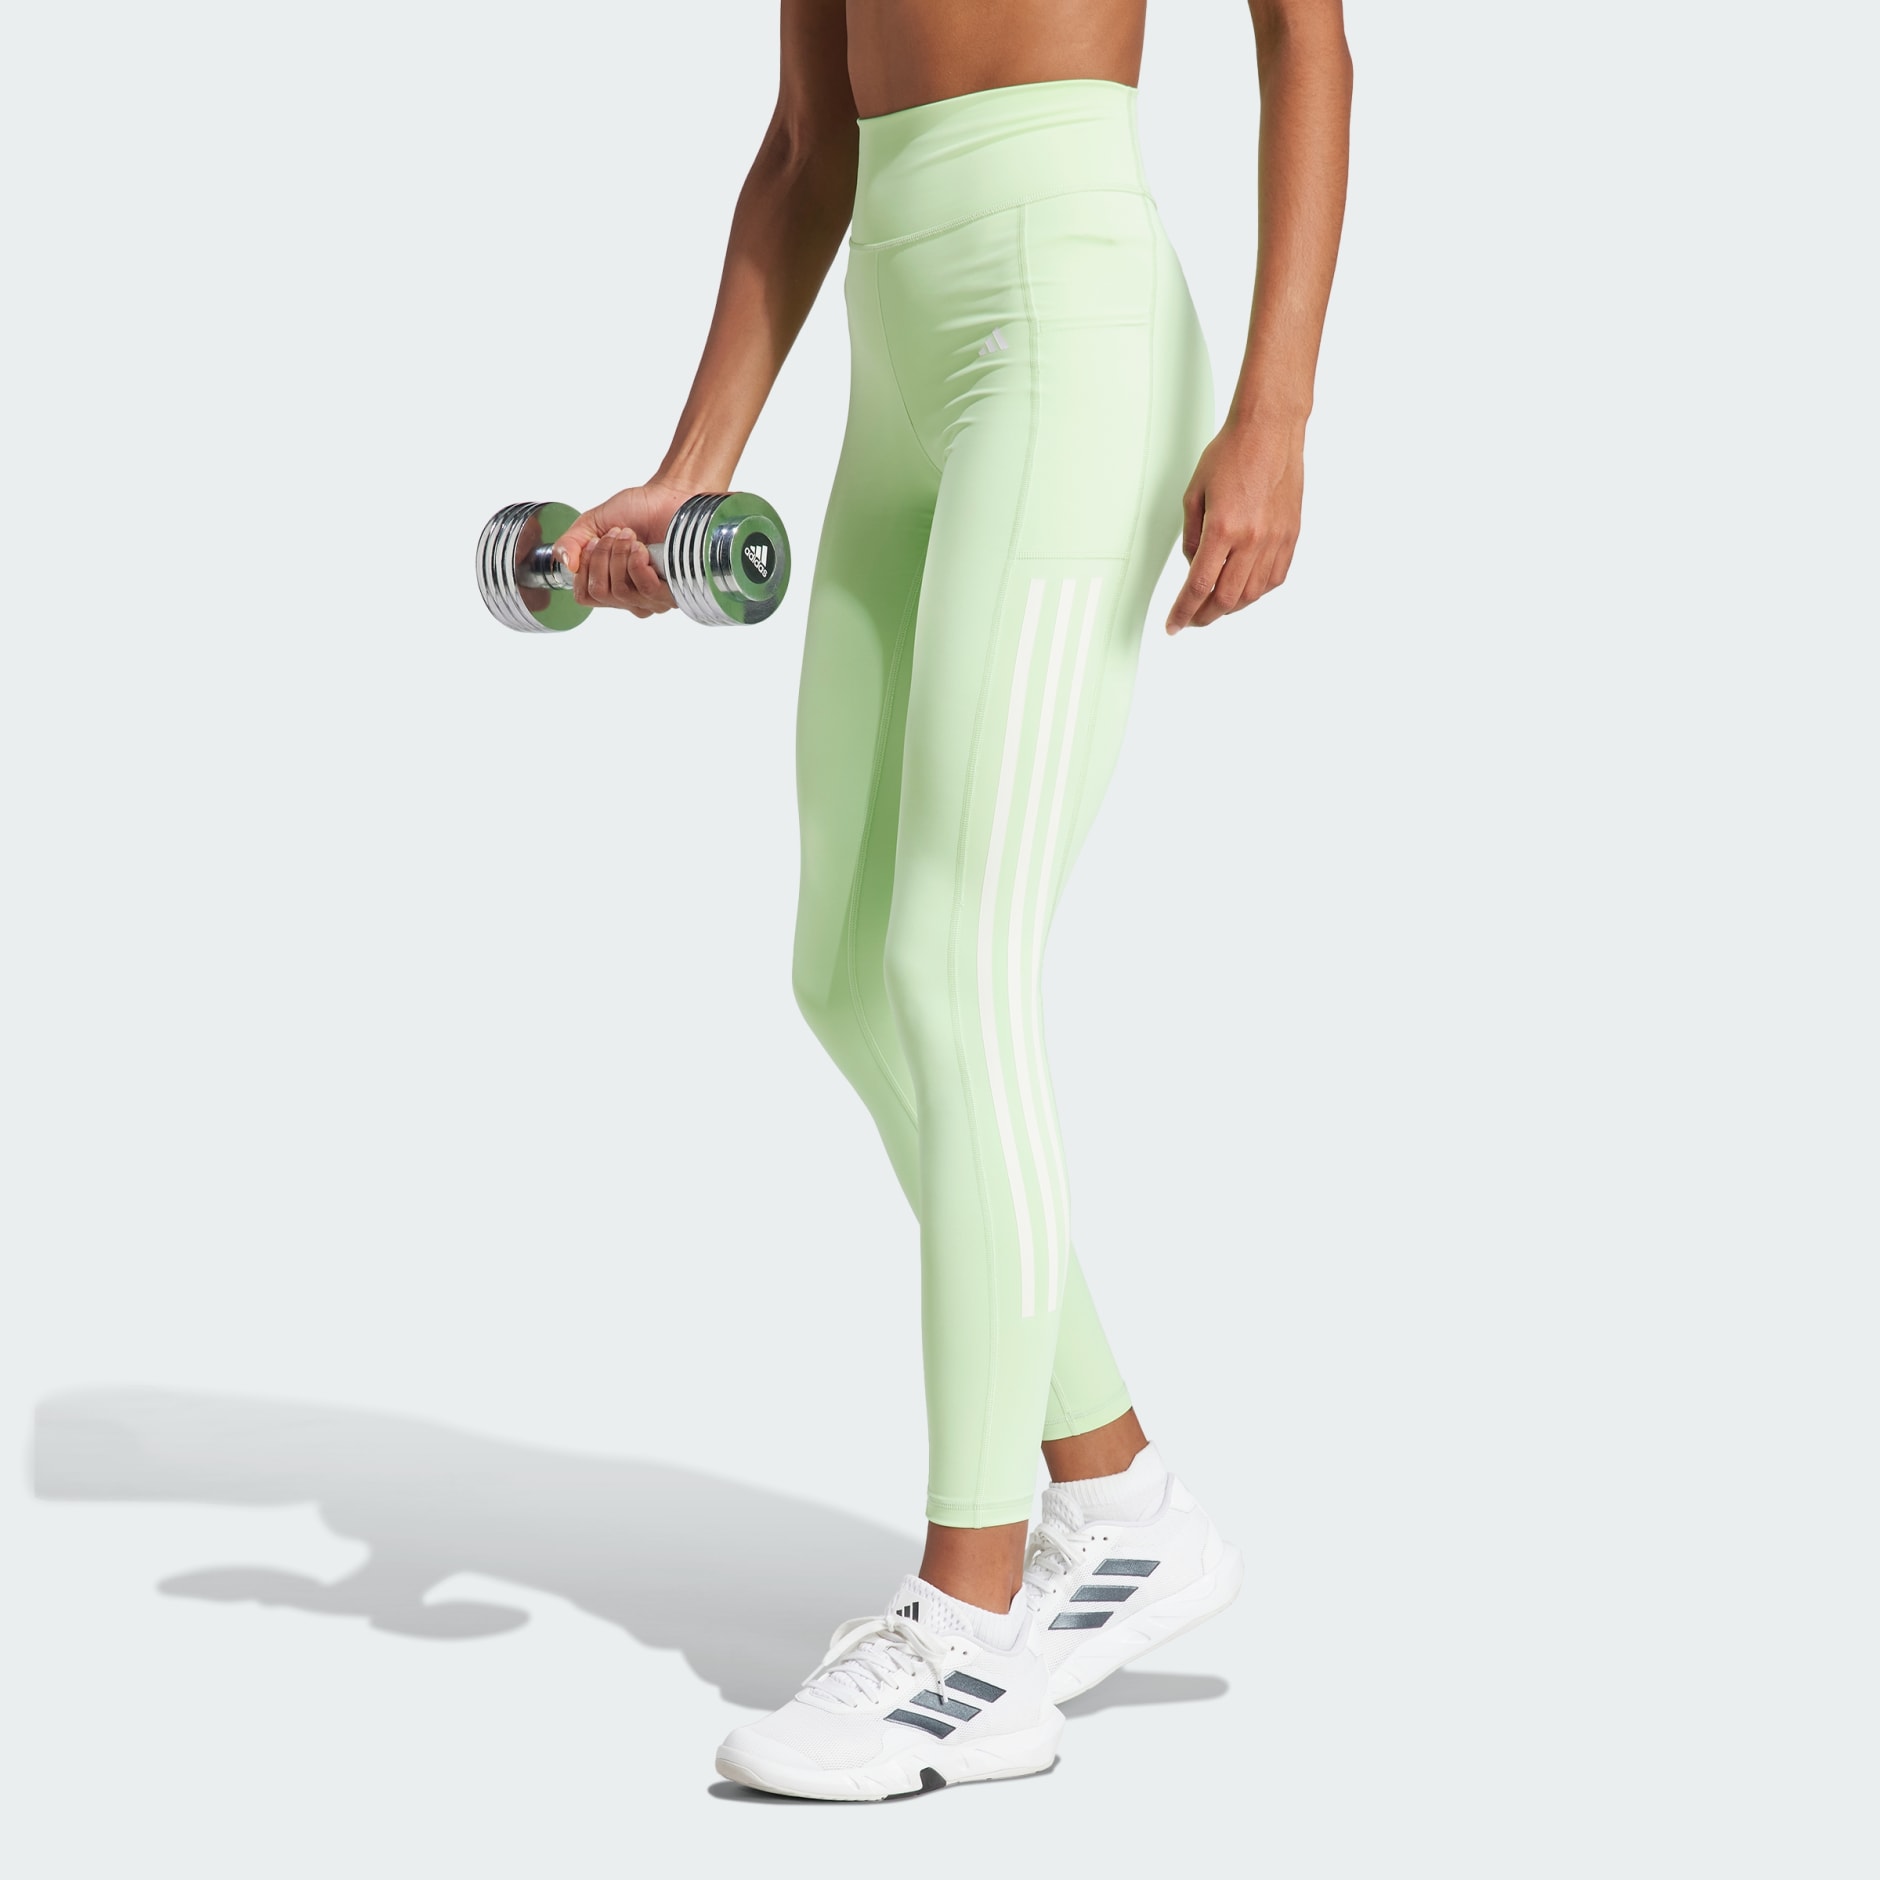 Women's Clothing - Optime 3-Stripes Full-Length Leggings - Green